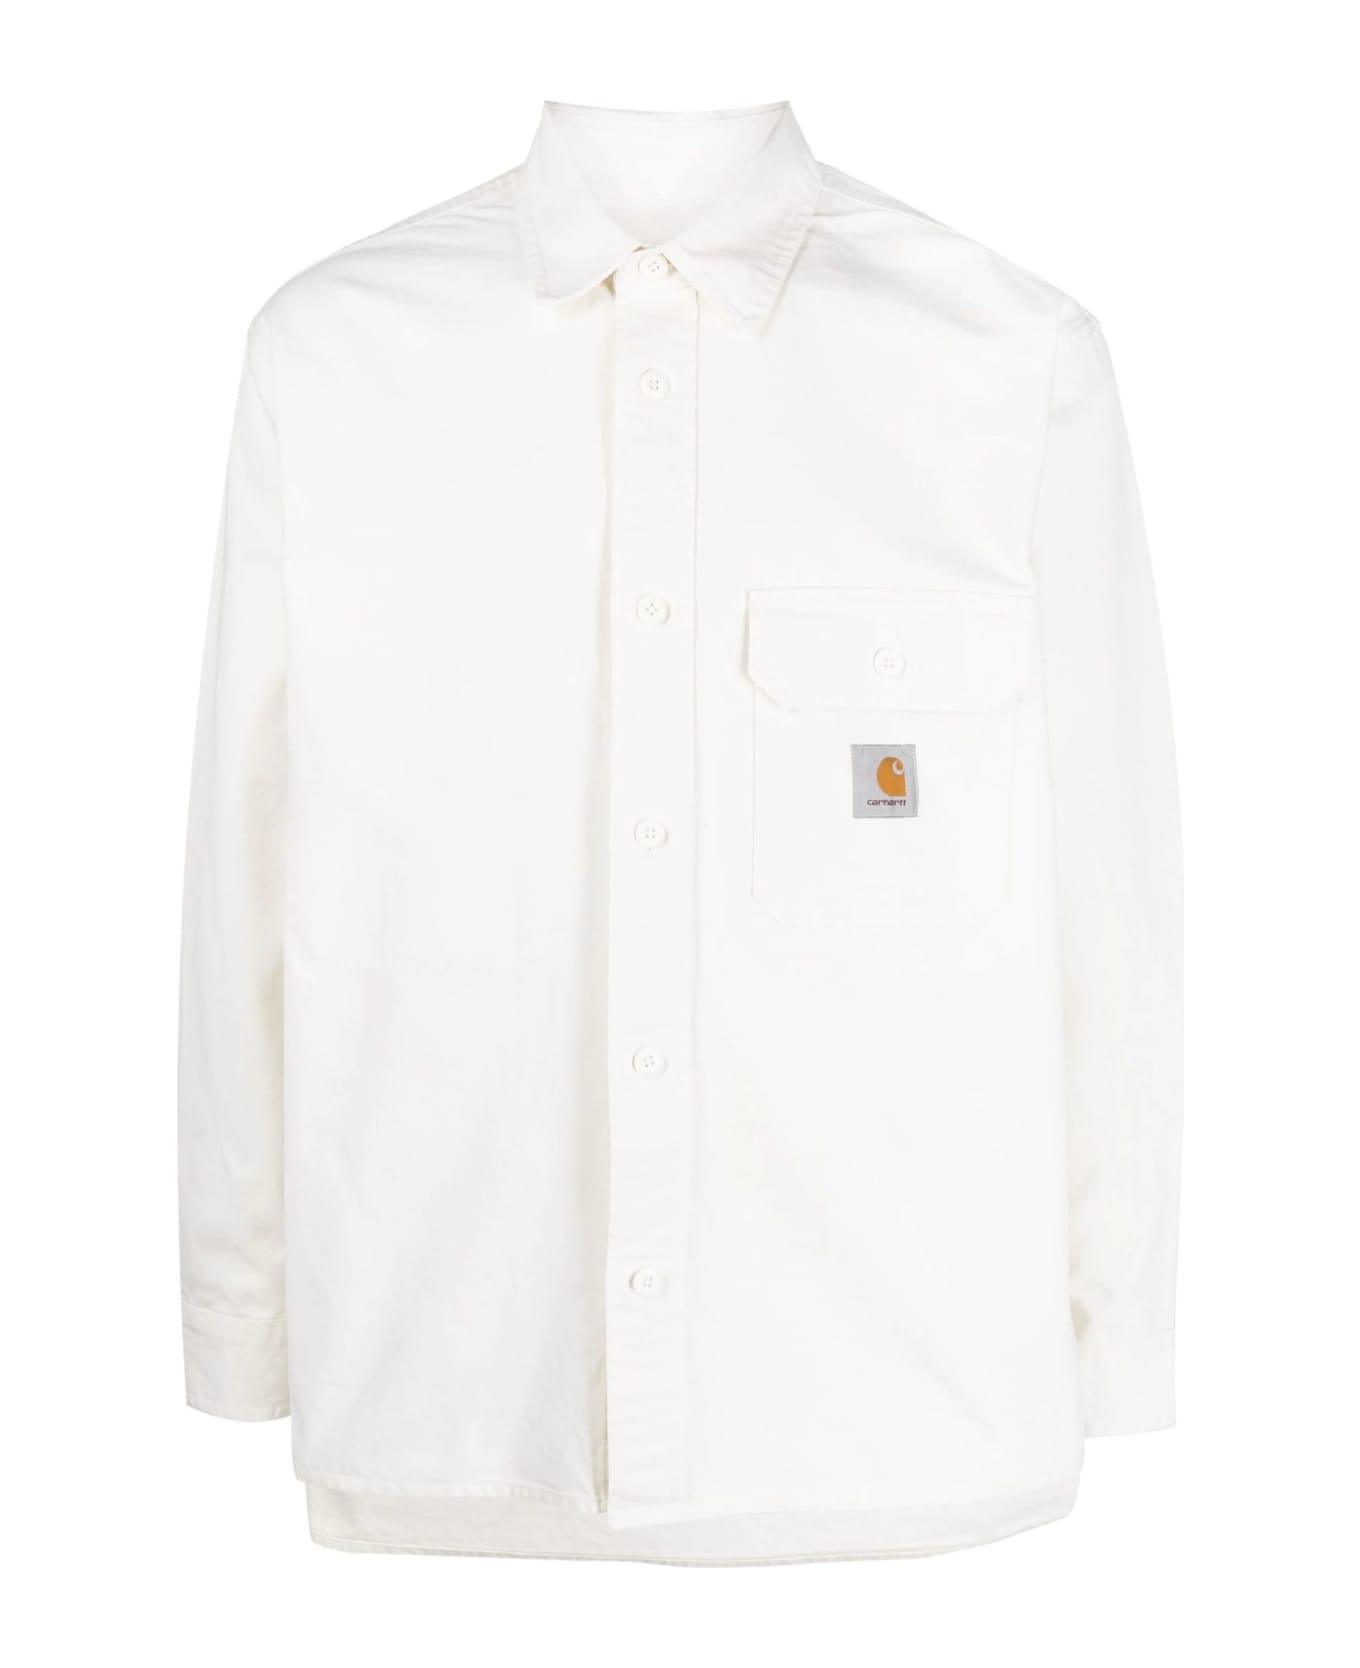 Carhartt Shirts White - White シャツ